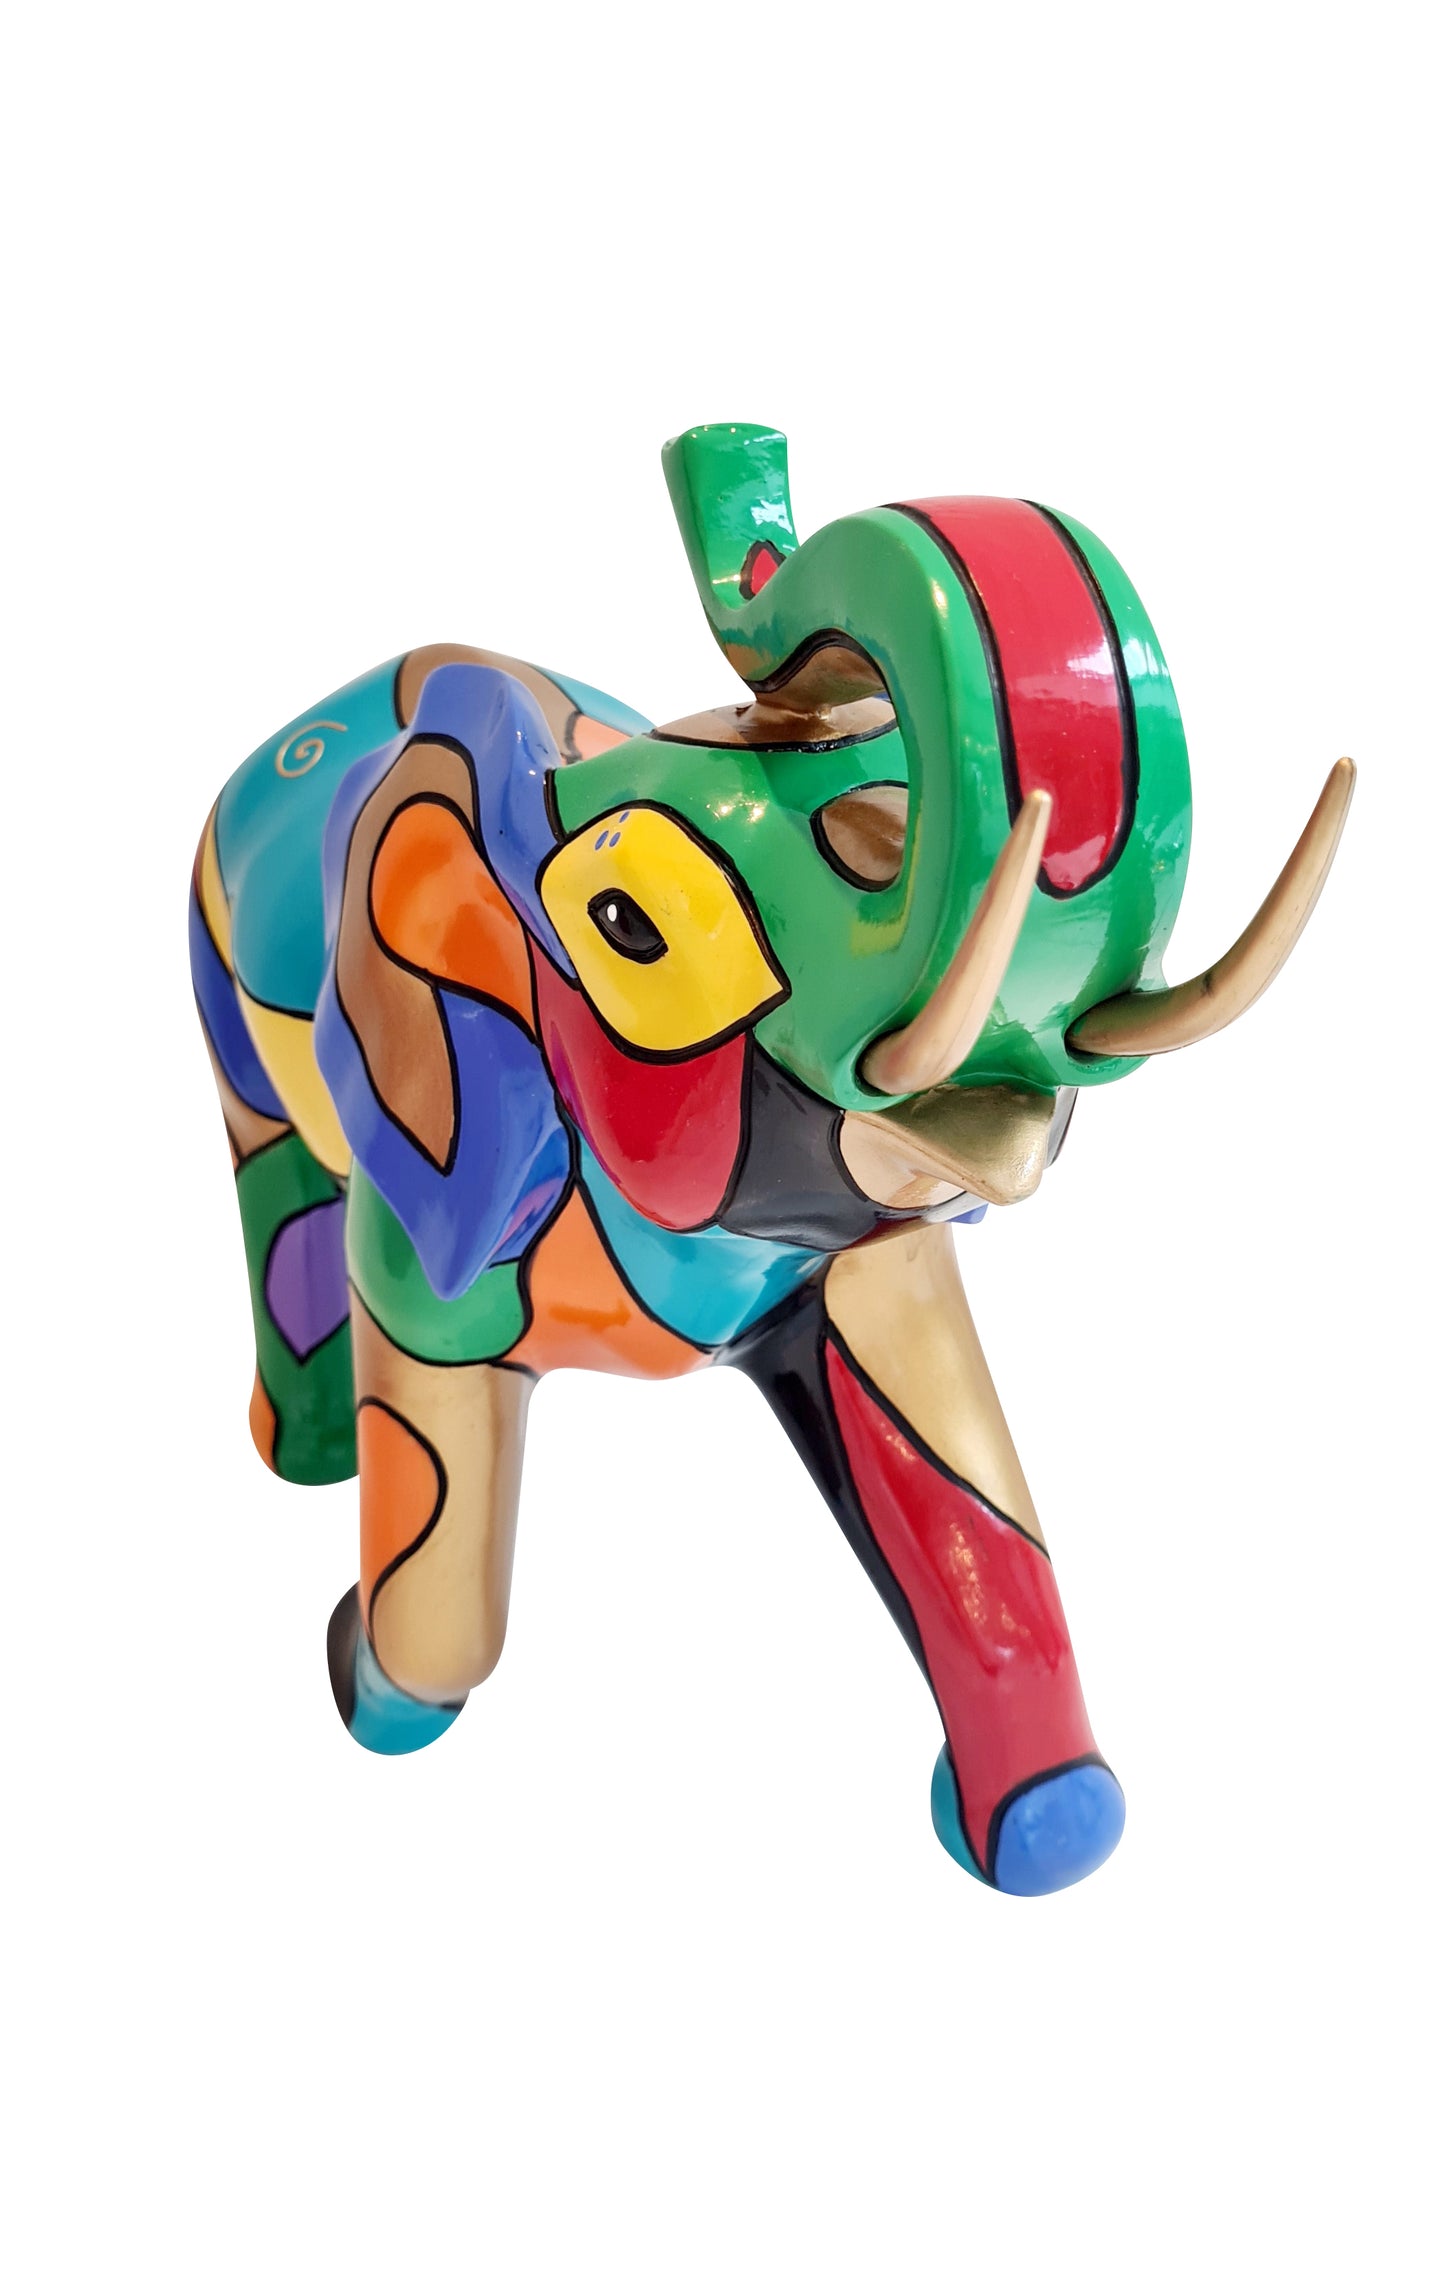 Grande statue éléphant, en résine multicolore. Longueur 43 centimètres. Pièce unique !